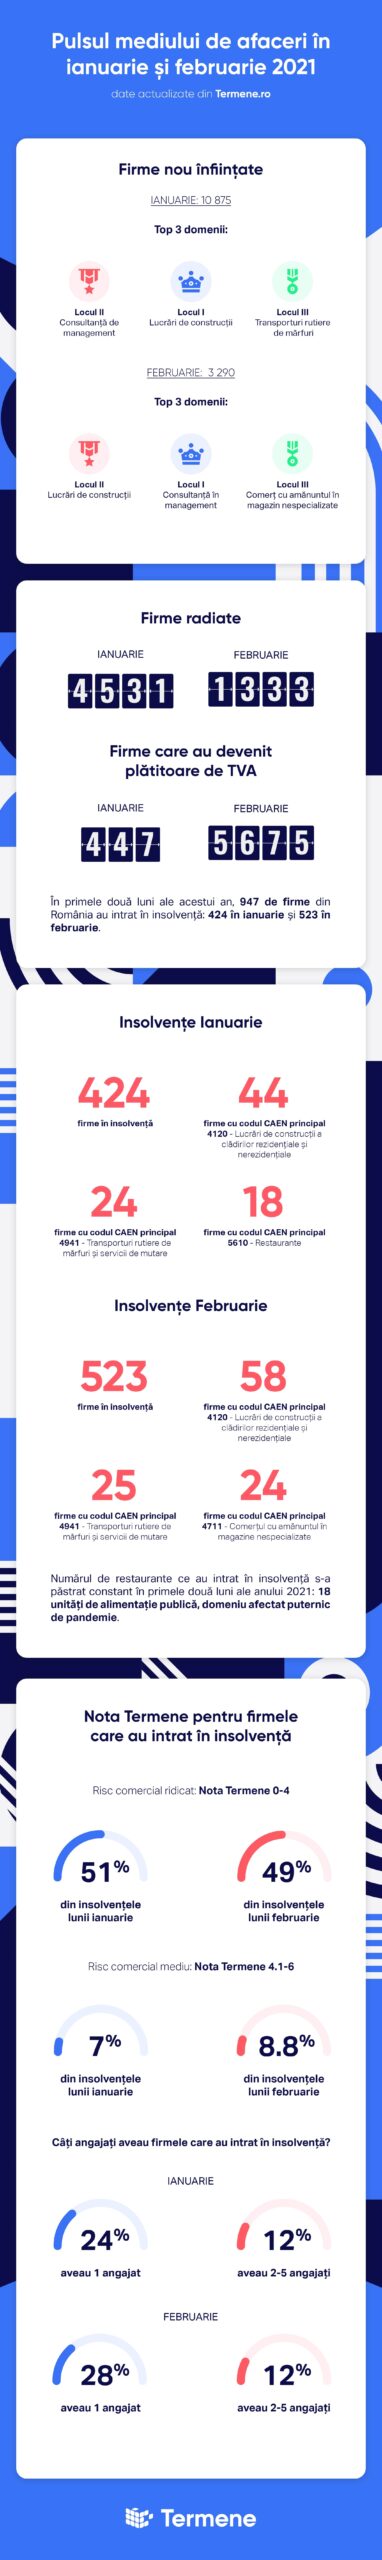 Infografic insolvență companii ianuarie februarie 2021